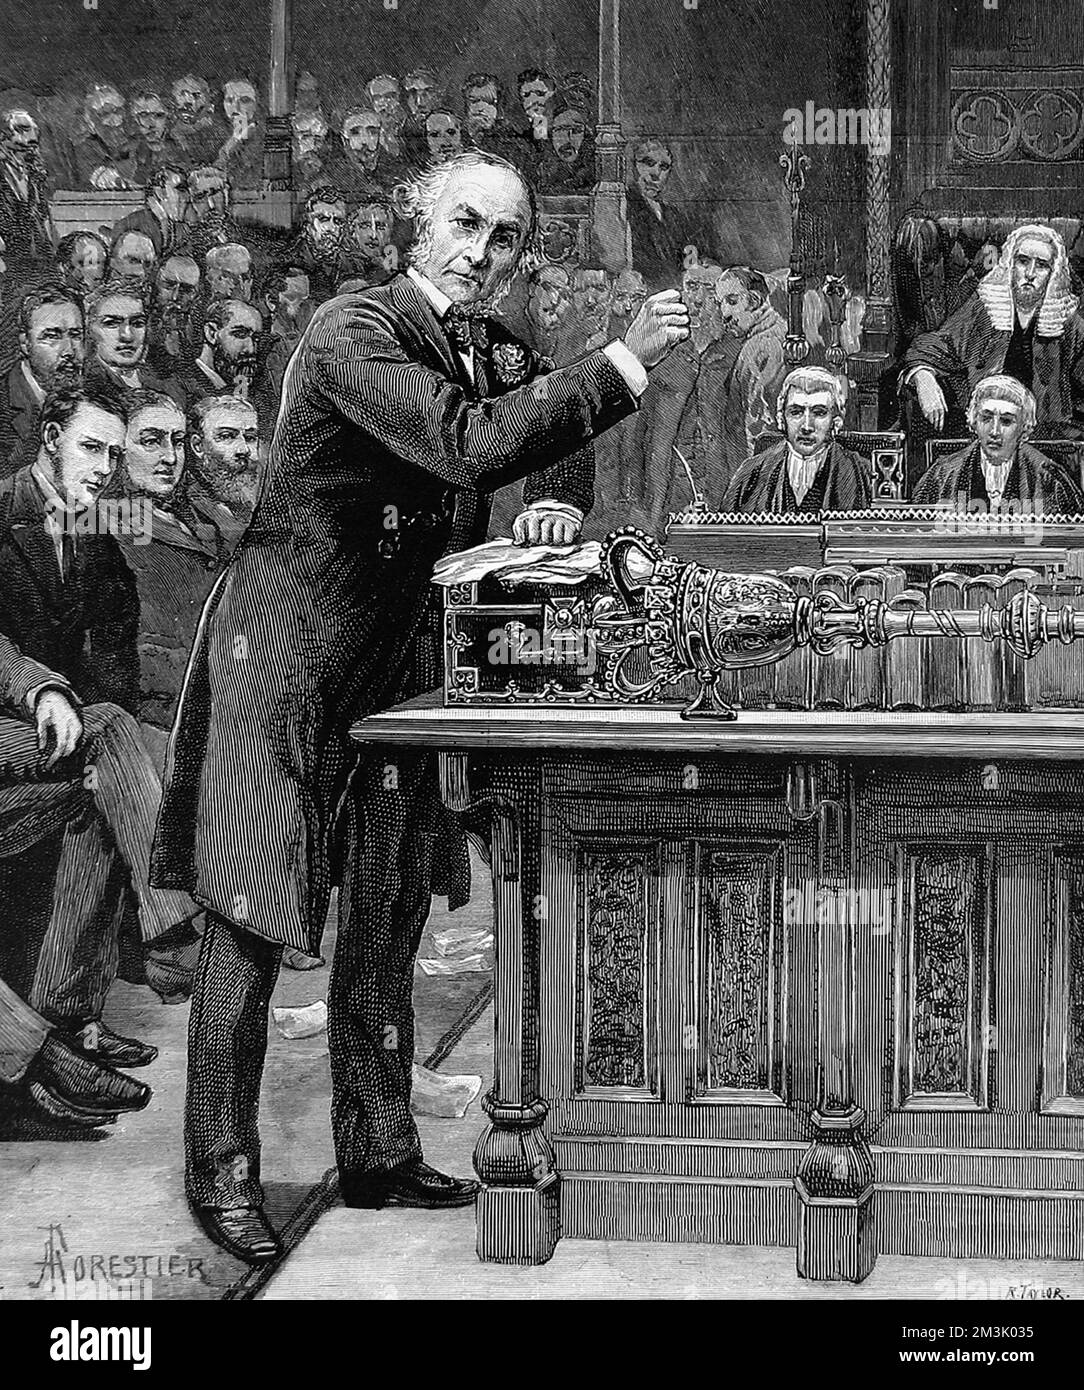 William Ewart Gladstone (1809 - 1898), statista liberale inglese, che spiega alla Camera dei Comuni il suo schema per il governo d'Irlanda. Gladstone, ha tentato di introdurre due volte un disegno di legge sull'interno per l'Irlanda, ma in entrambe le occasioni è stato sconfitto. Foto Stock